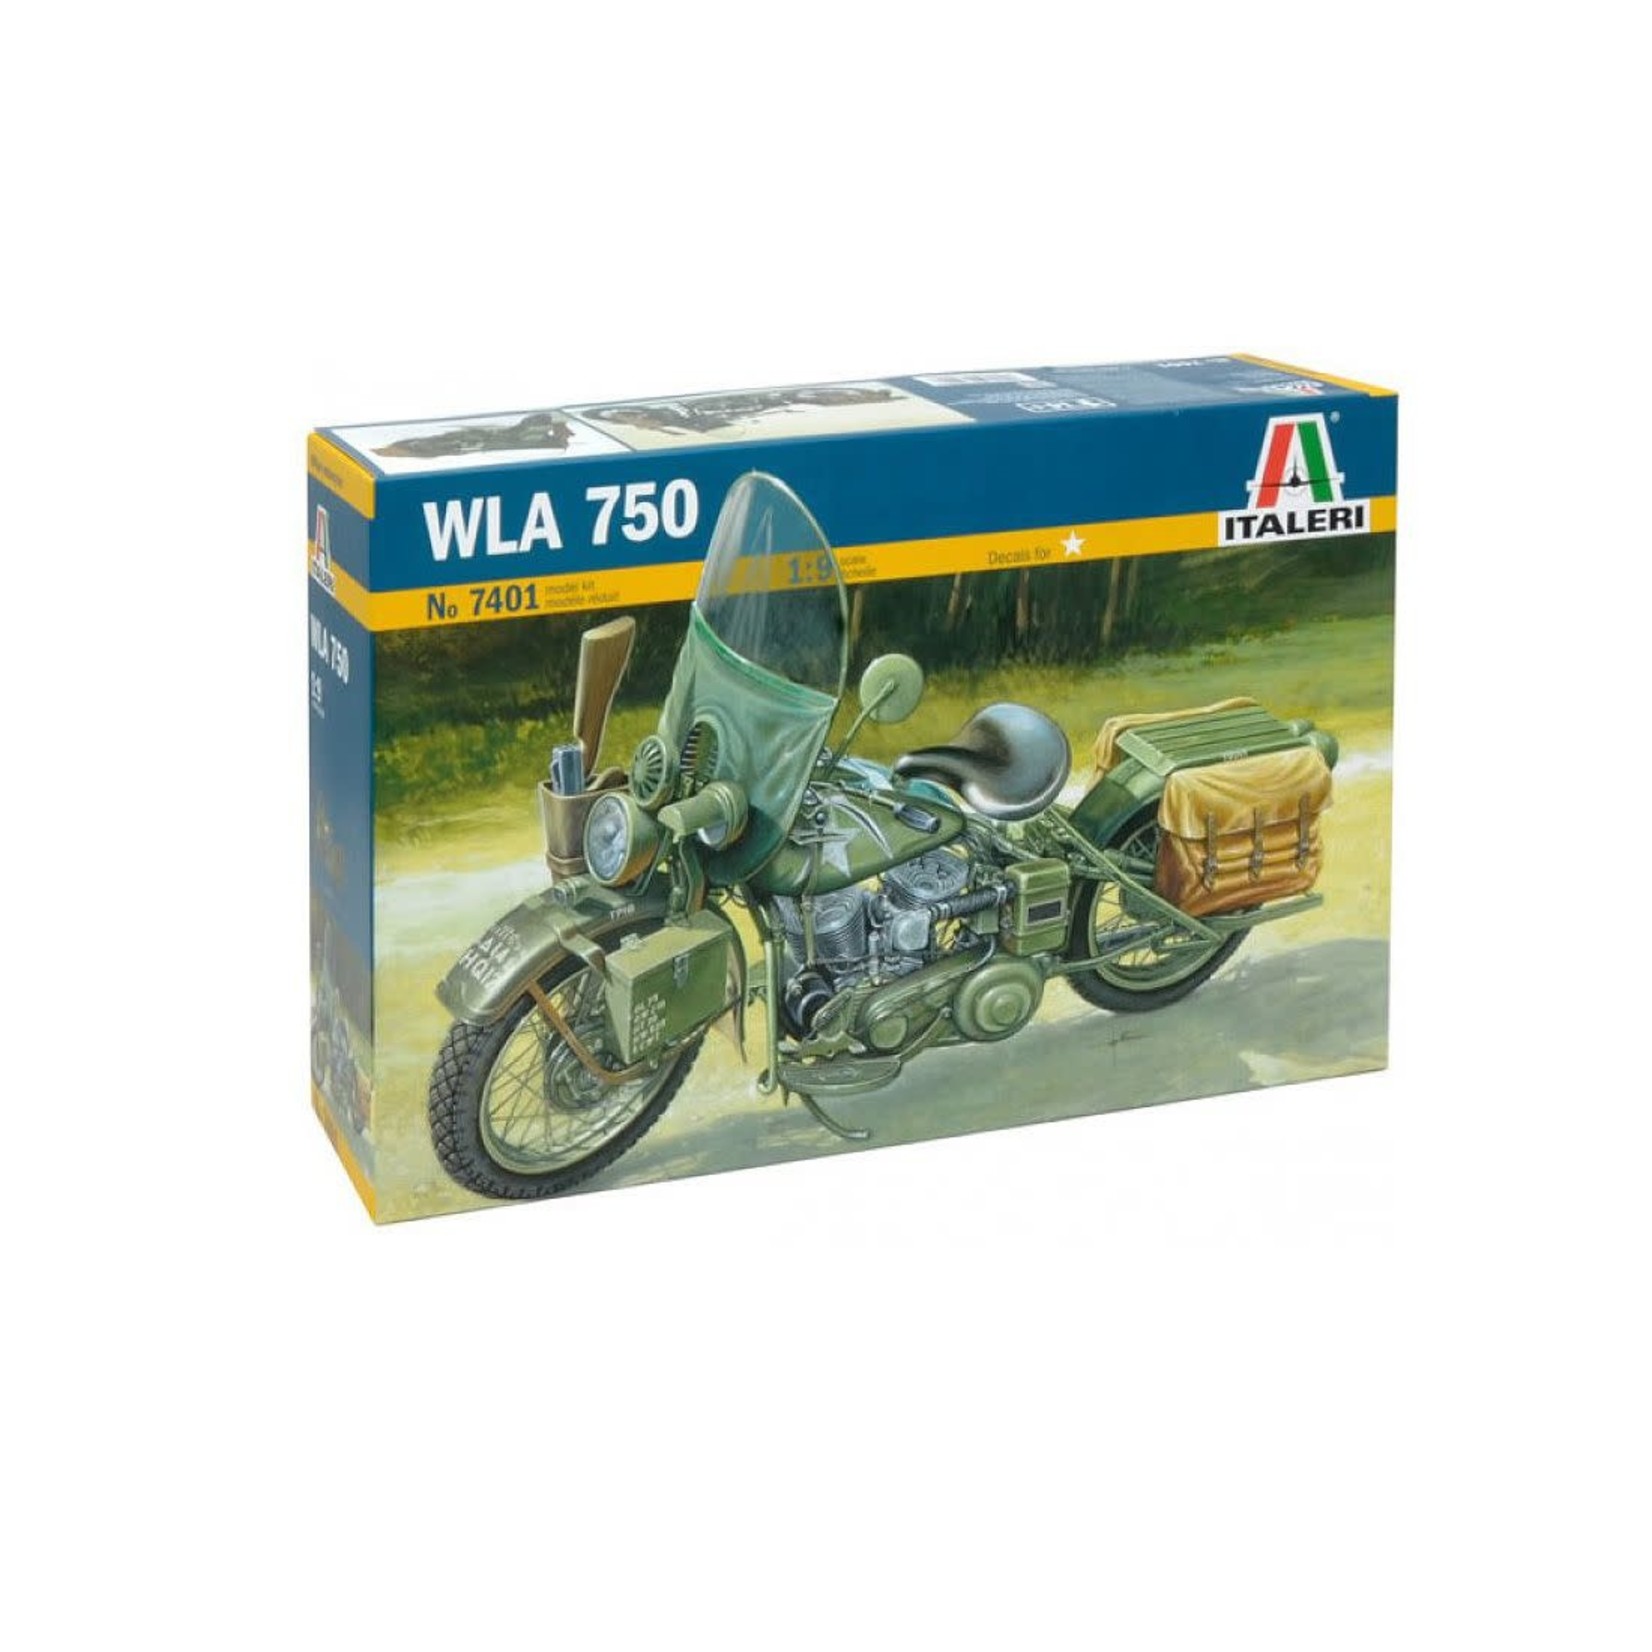 Italeri 1/9 WLA 750 Us Military Cycle Kit